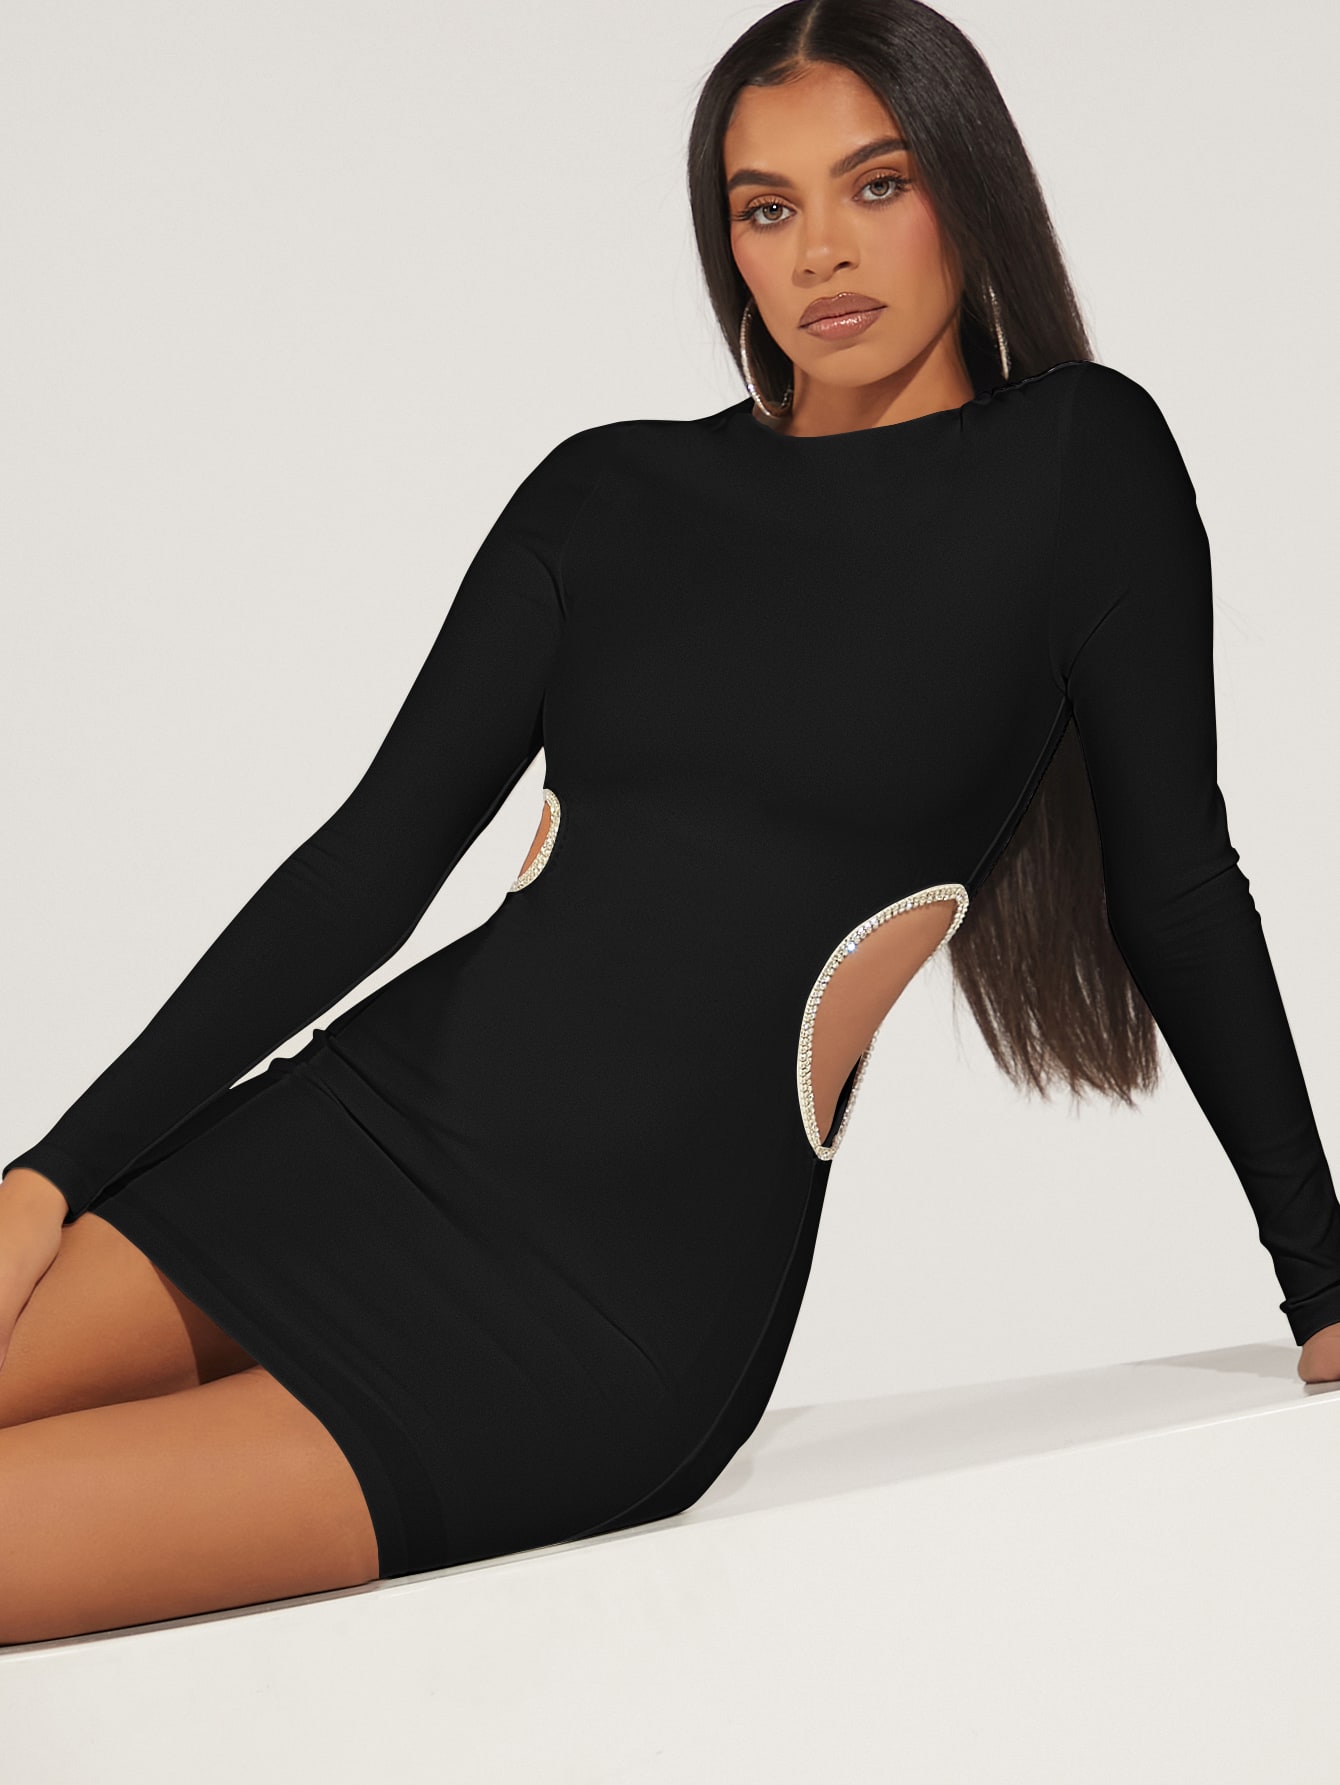 Buy Women Black Lace One Shoulder Side Cut-Out Dress Online at Sassafras